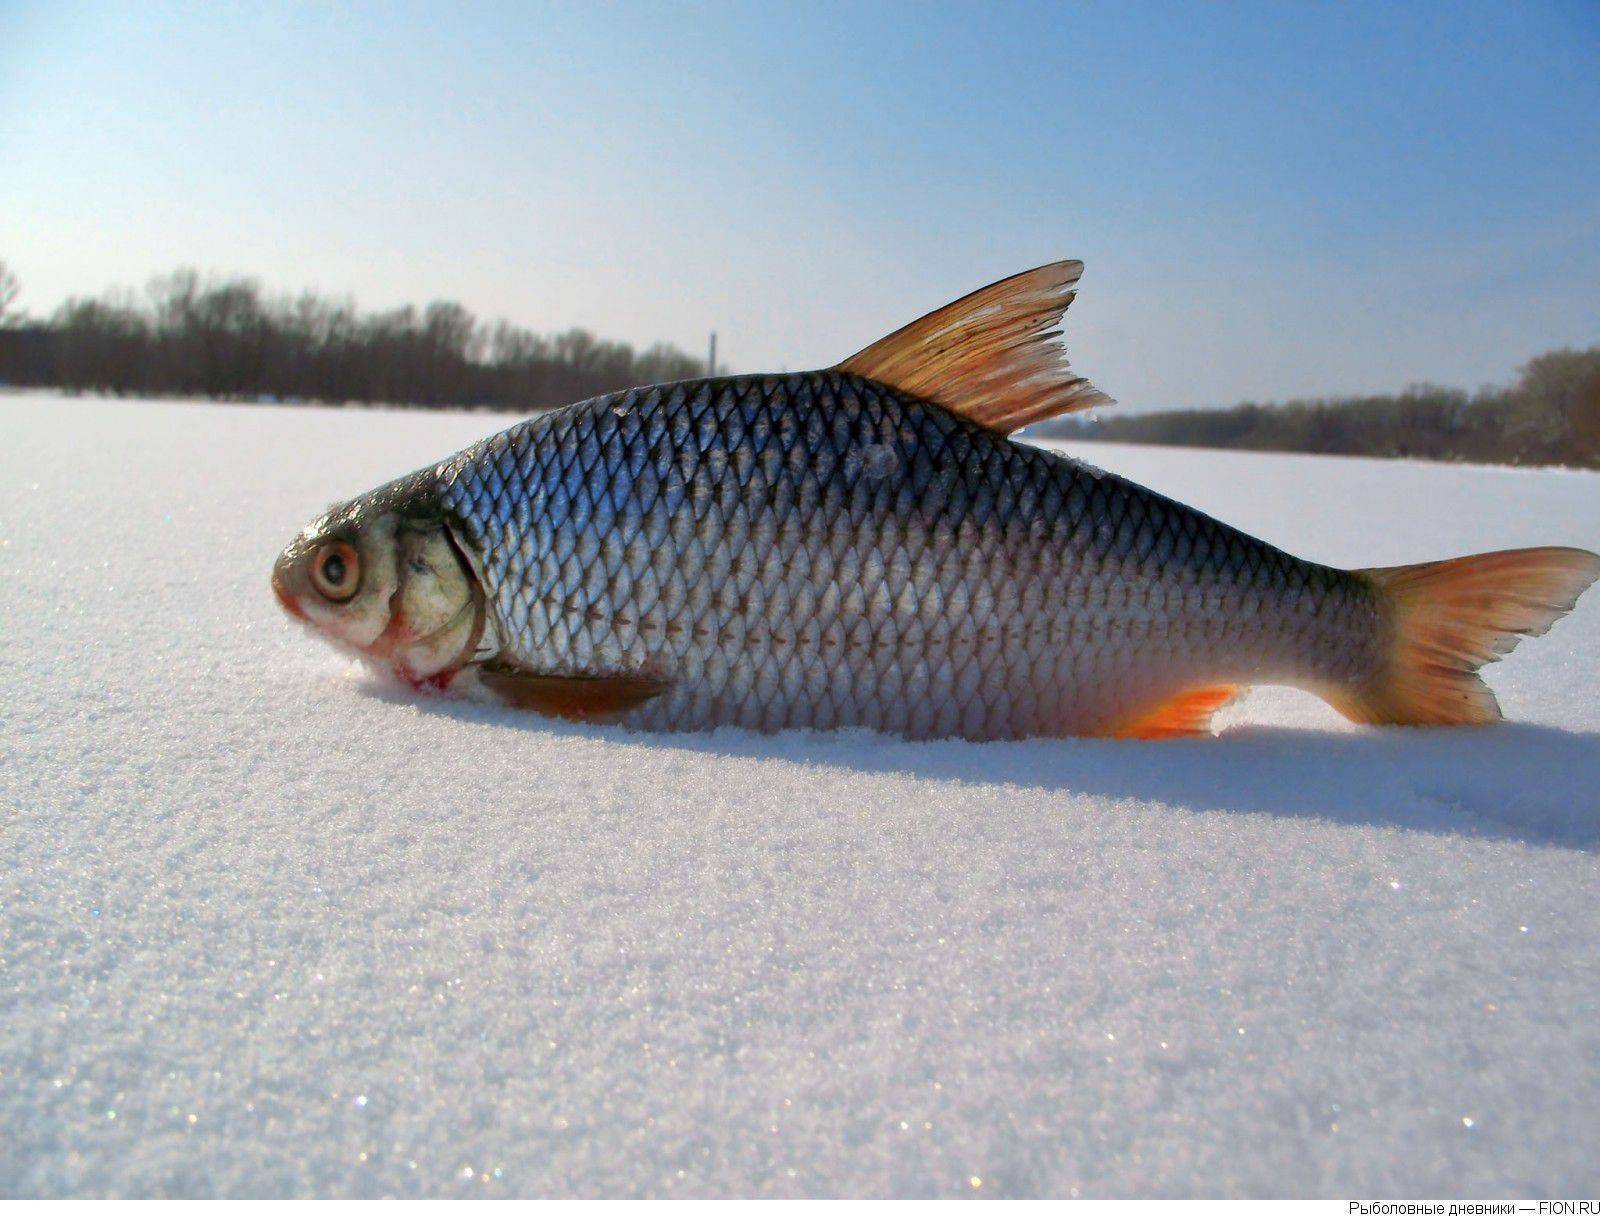 Рыба тарань содержание полезных веществ, польза и вред, свойства